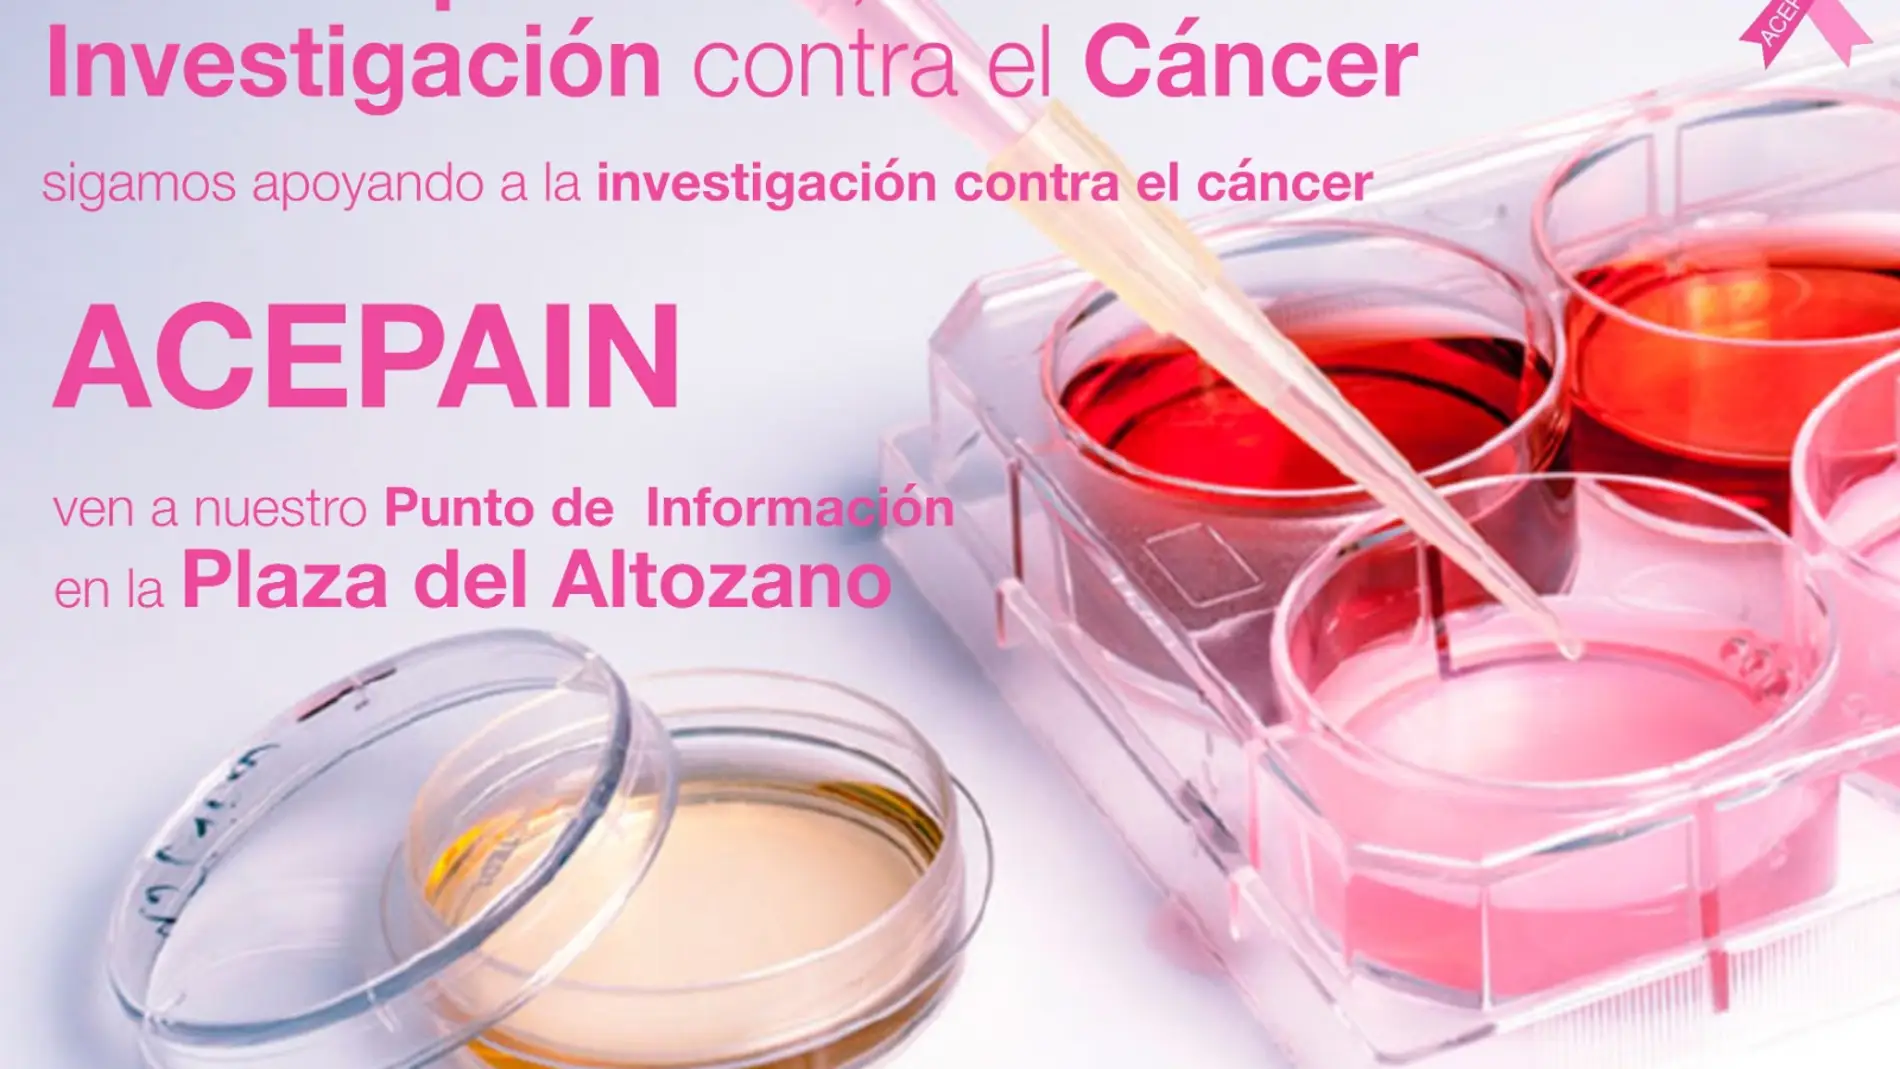 Cuestación para recaudar fondos para la investigación contra el cáncer 